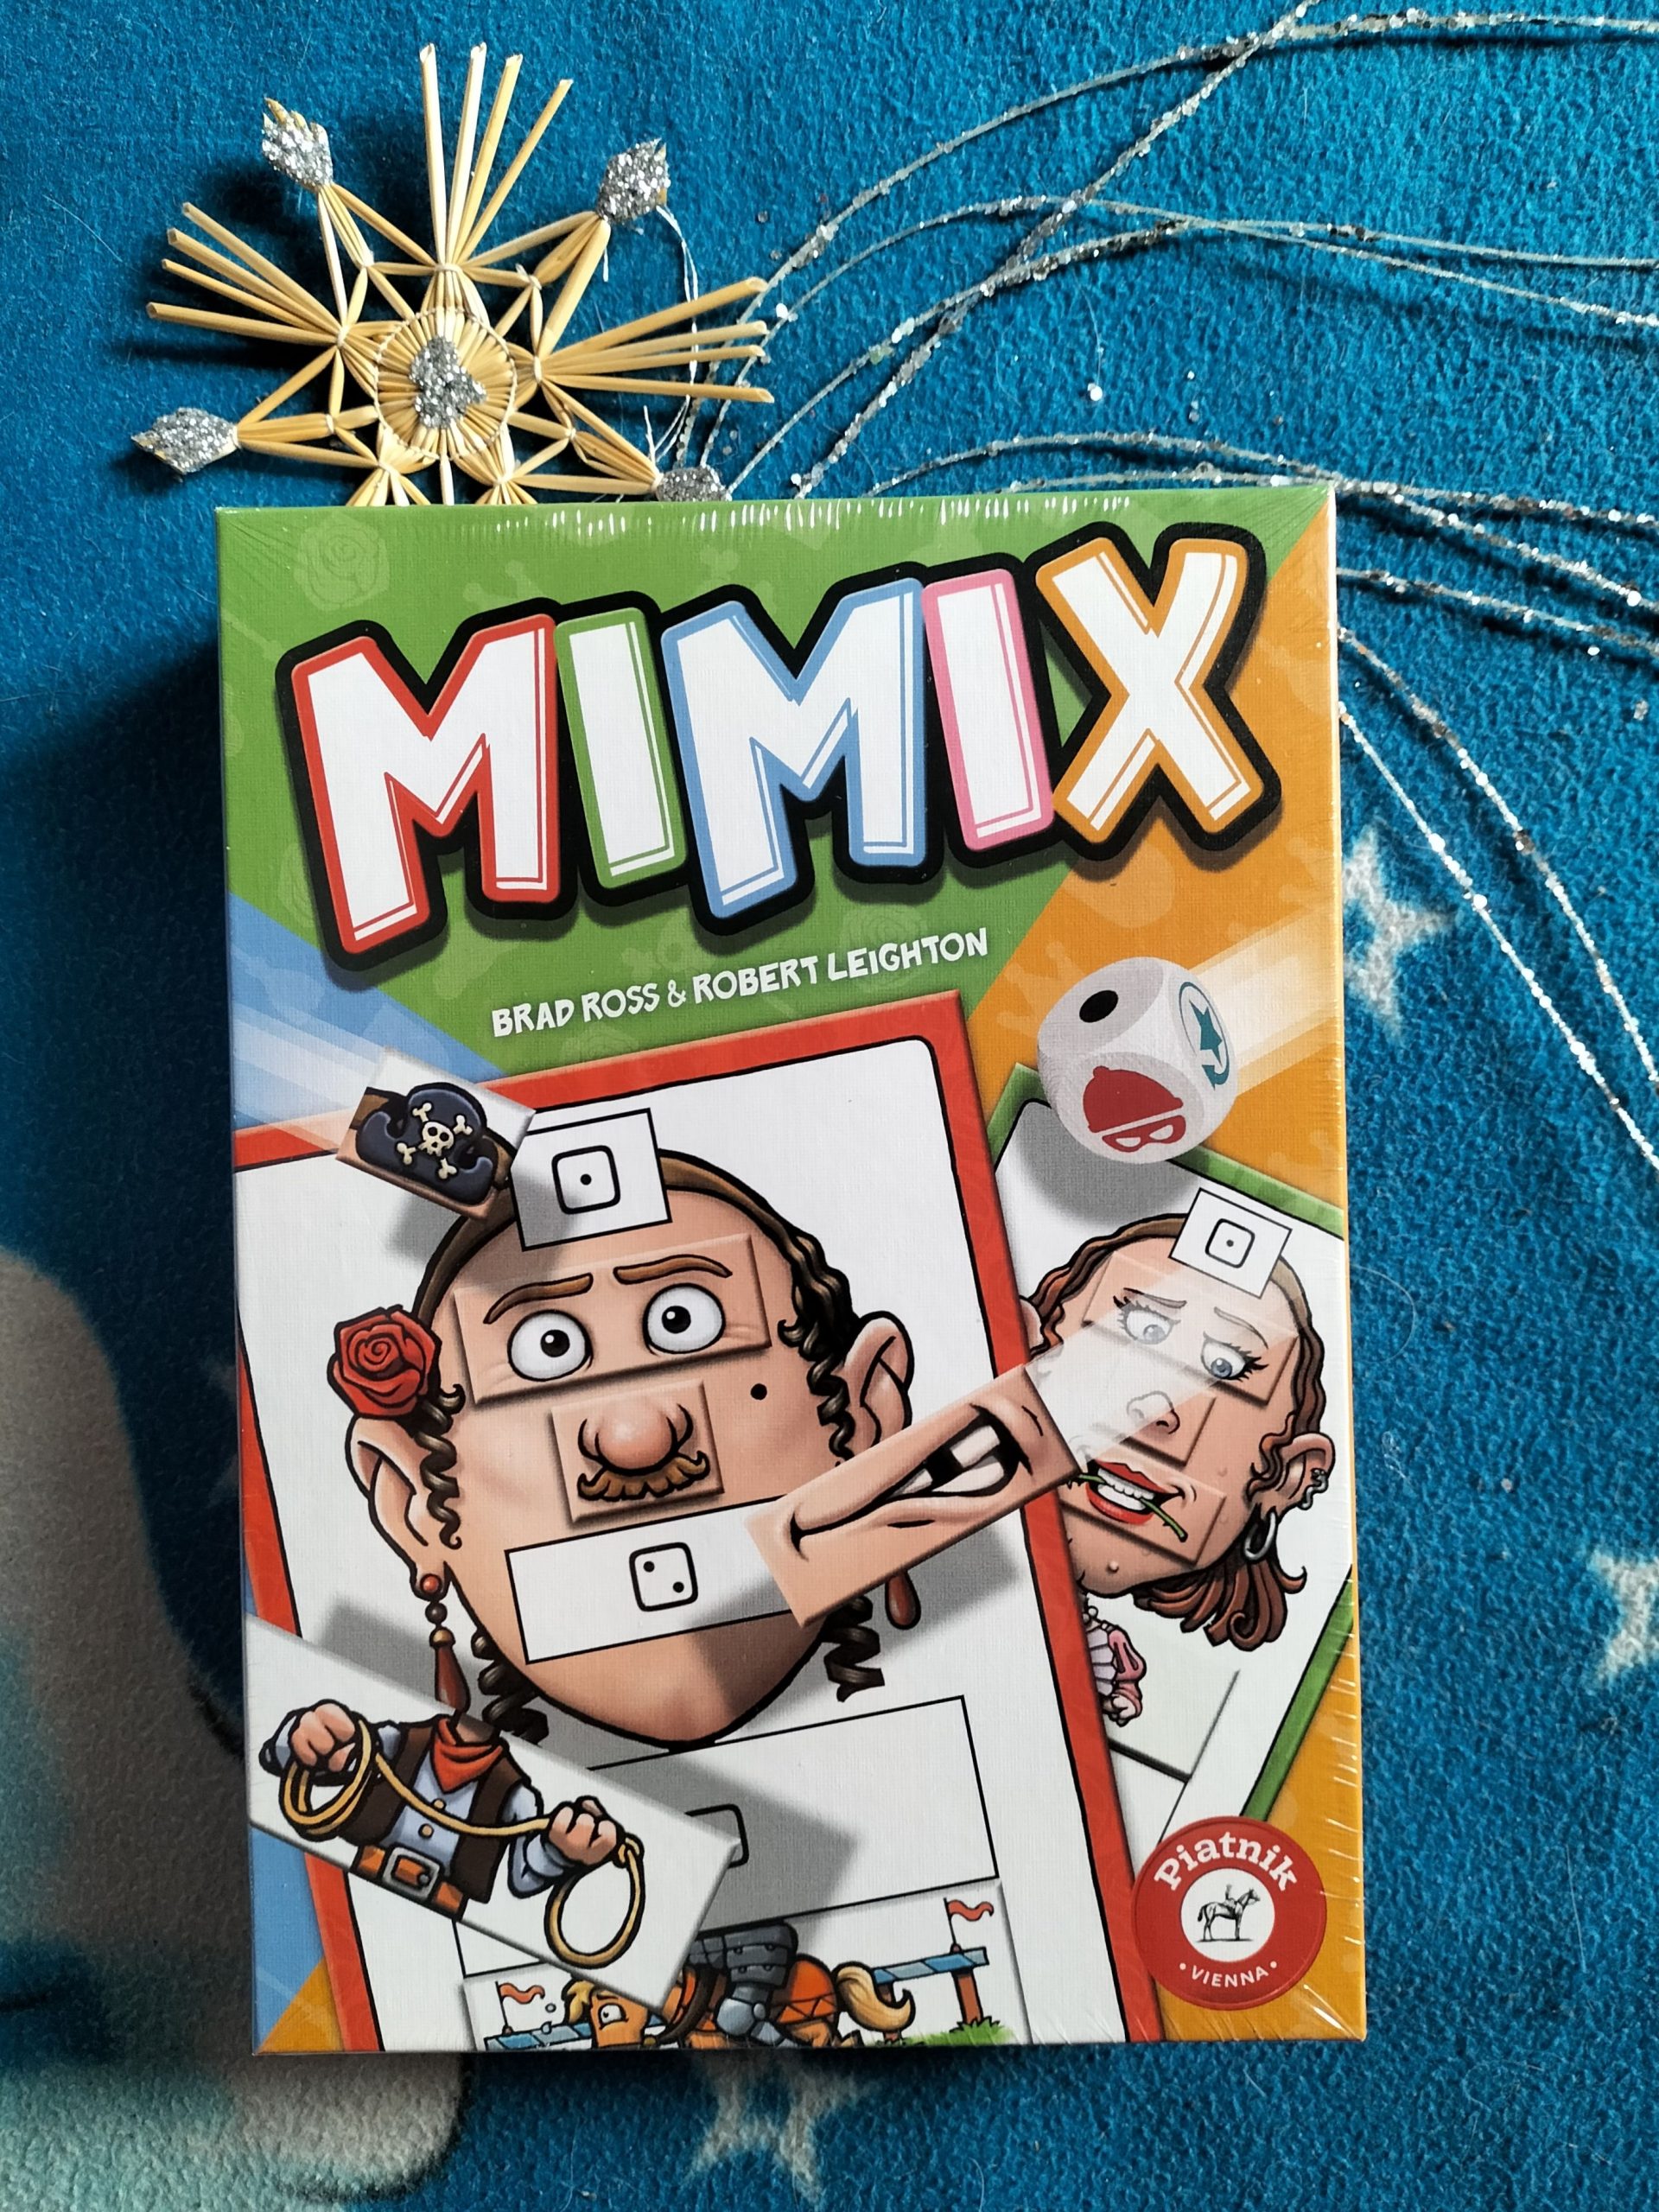 Schachtel vom Spiel Mimix